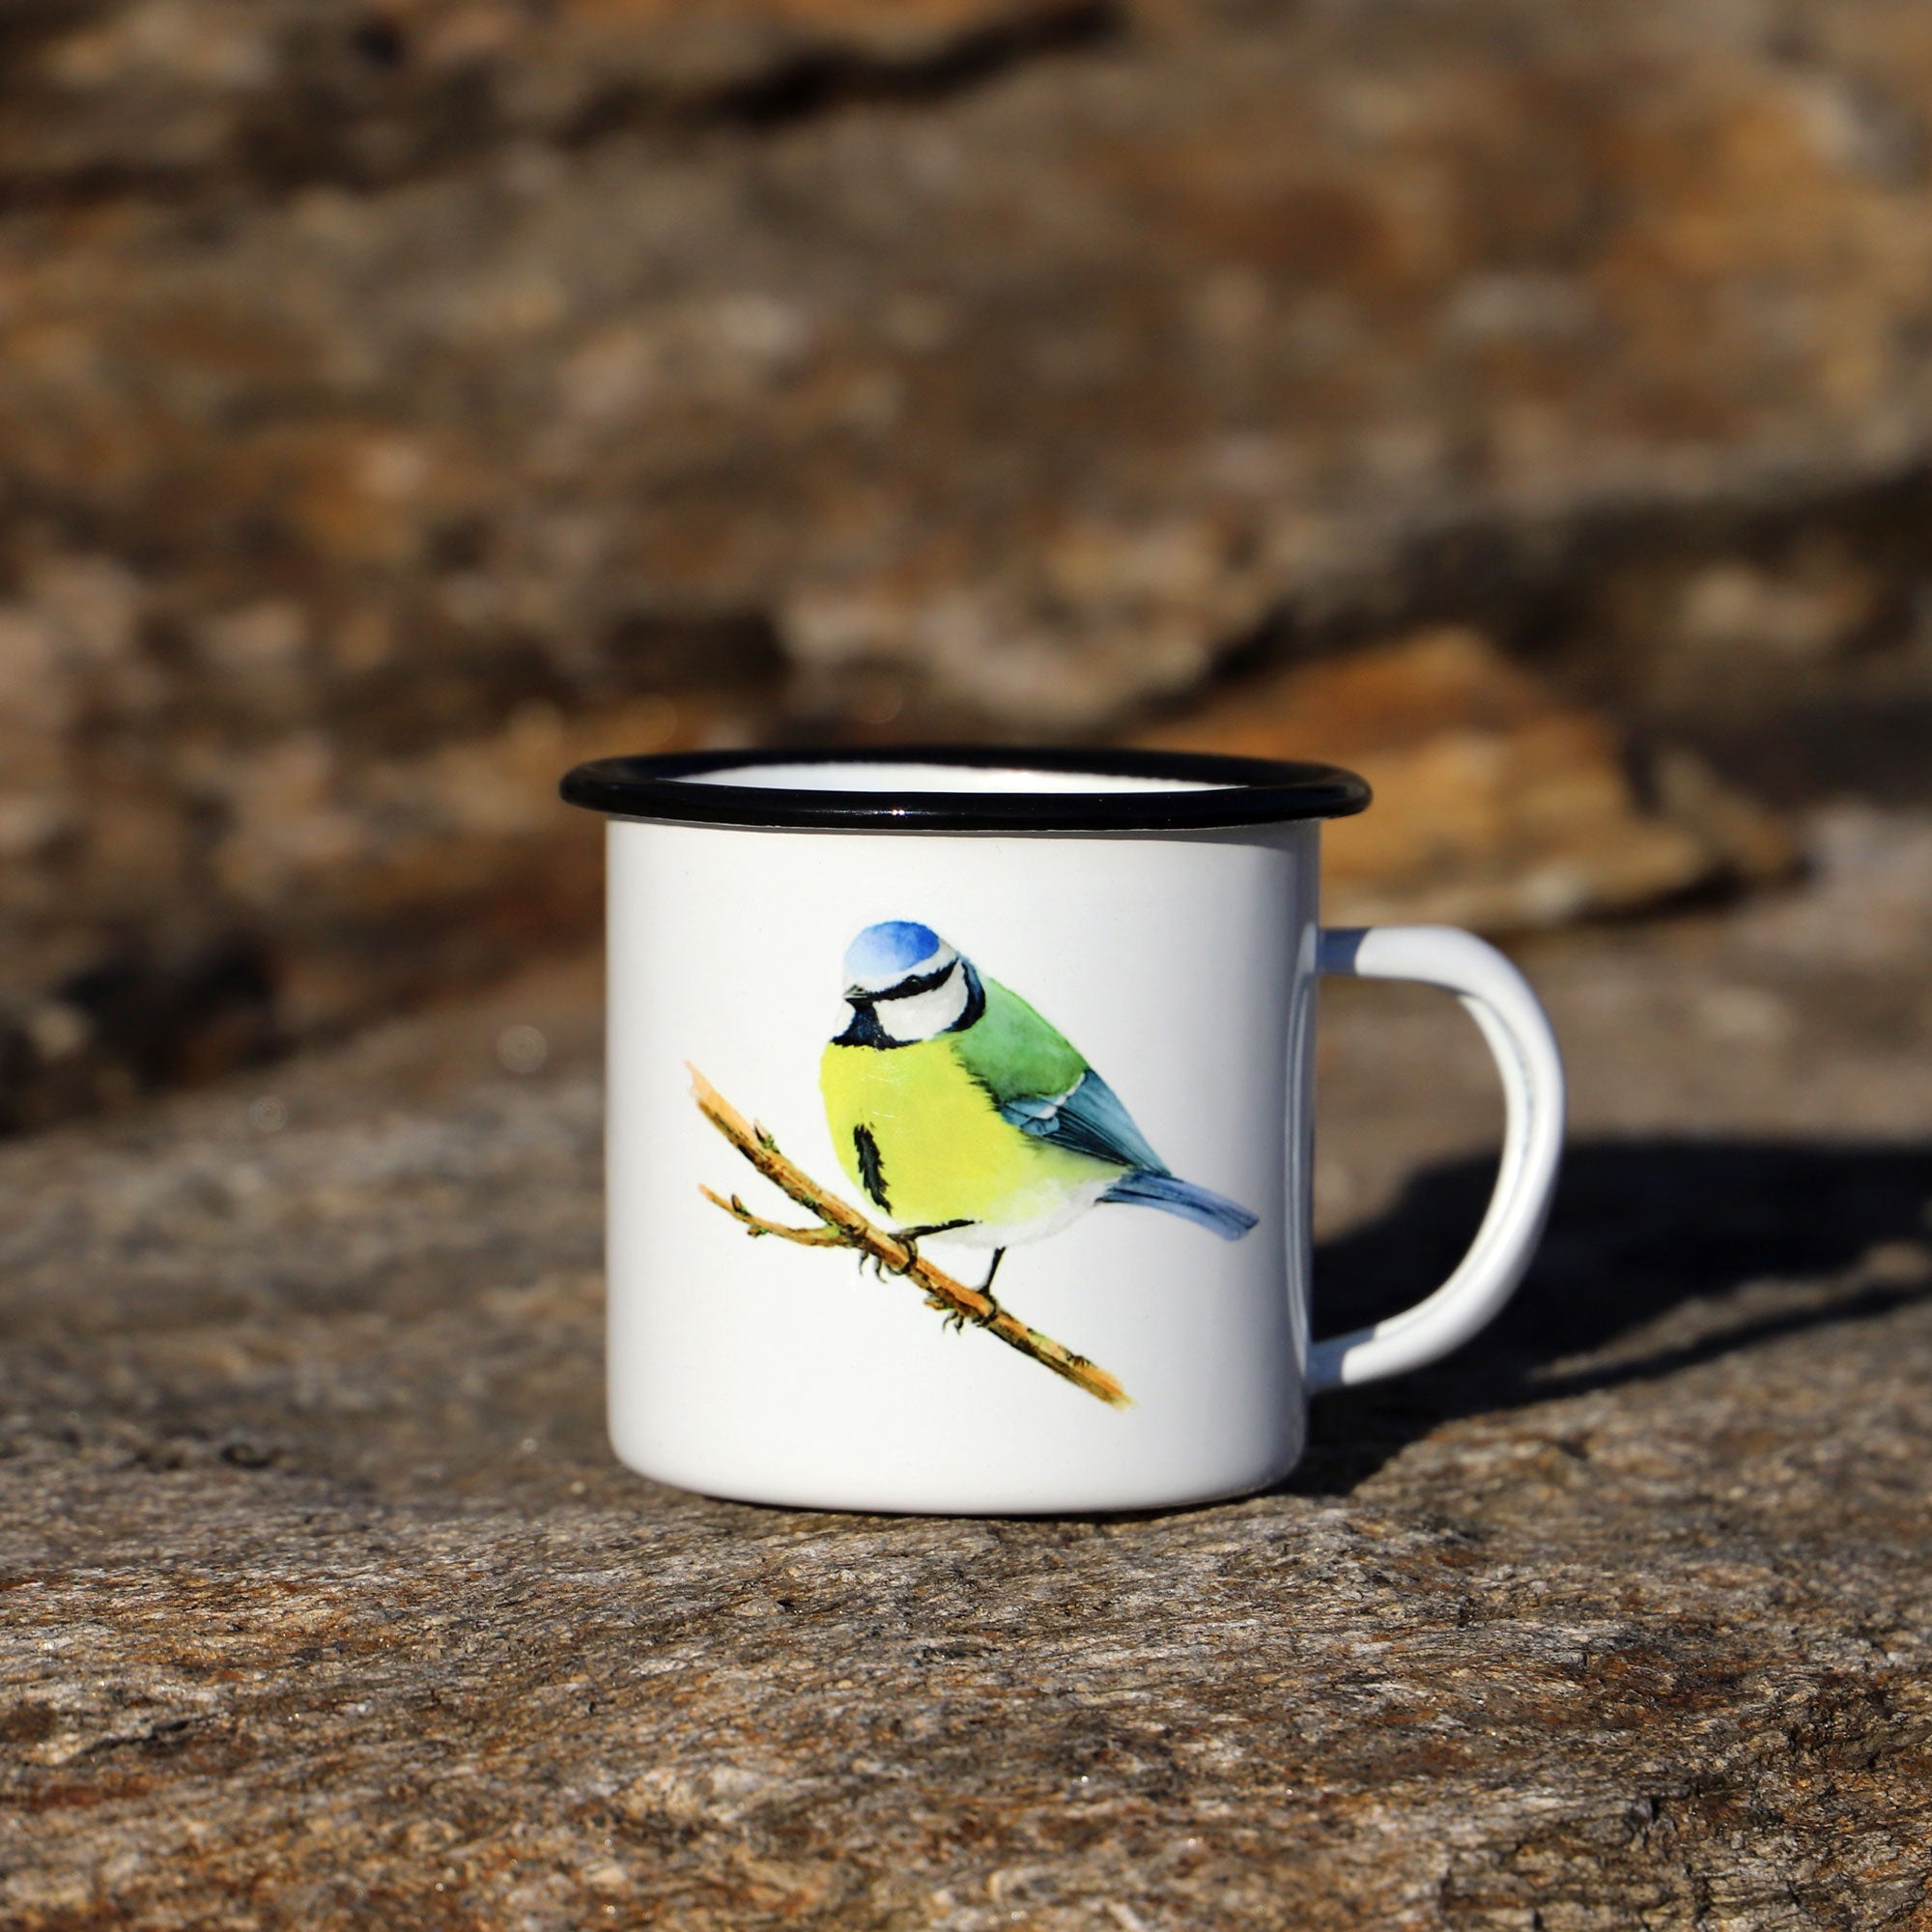 Enamel mug with Bluetit